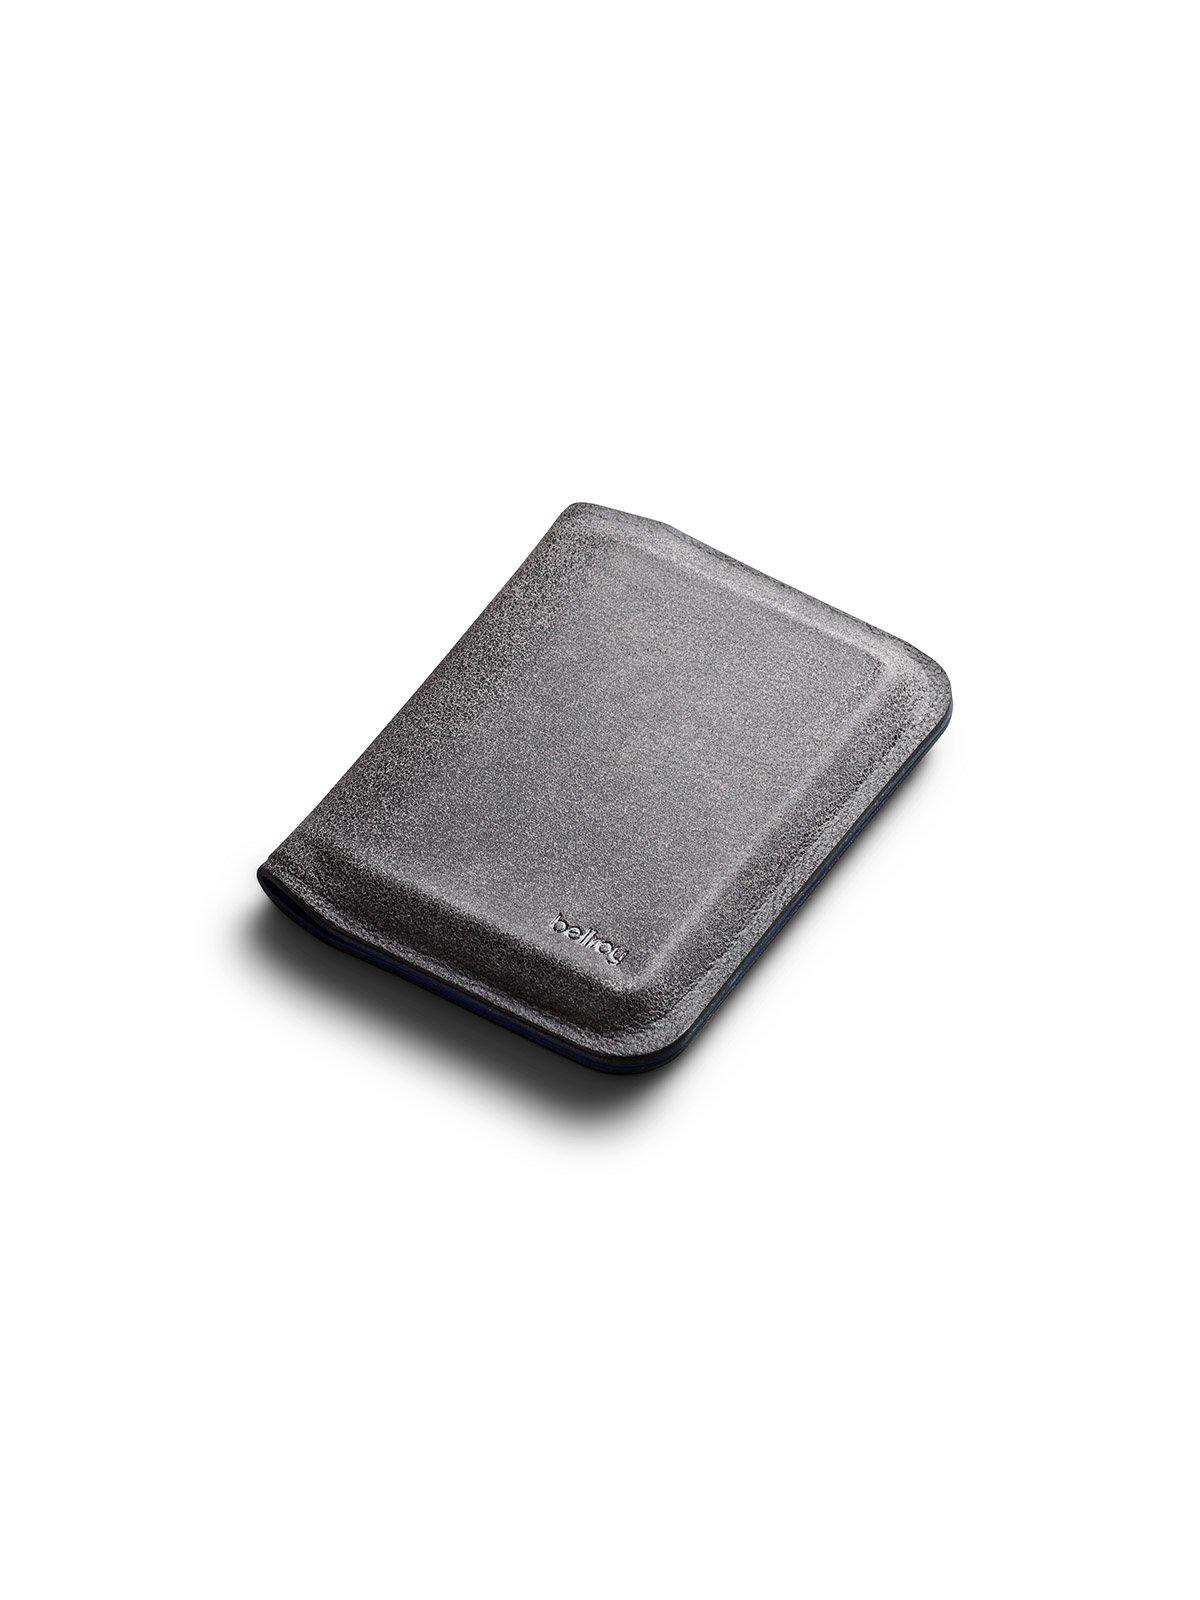 Bellroy APEX Slim Sleeve Wallet Pepperblue RFID